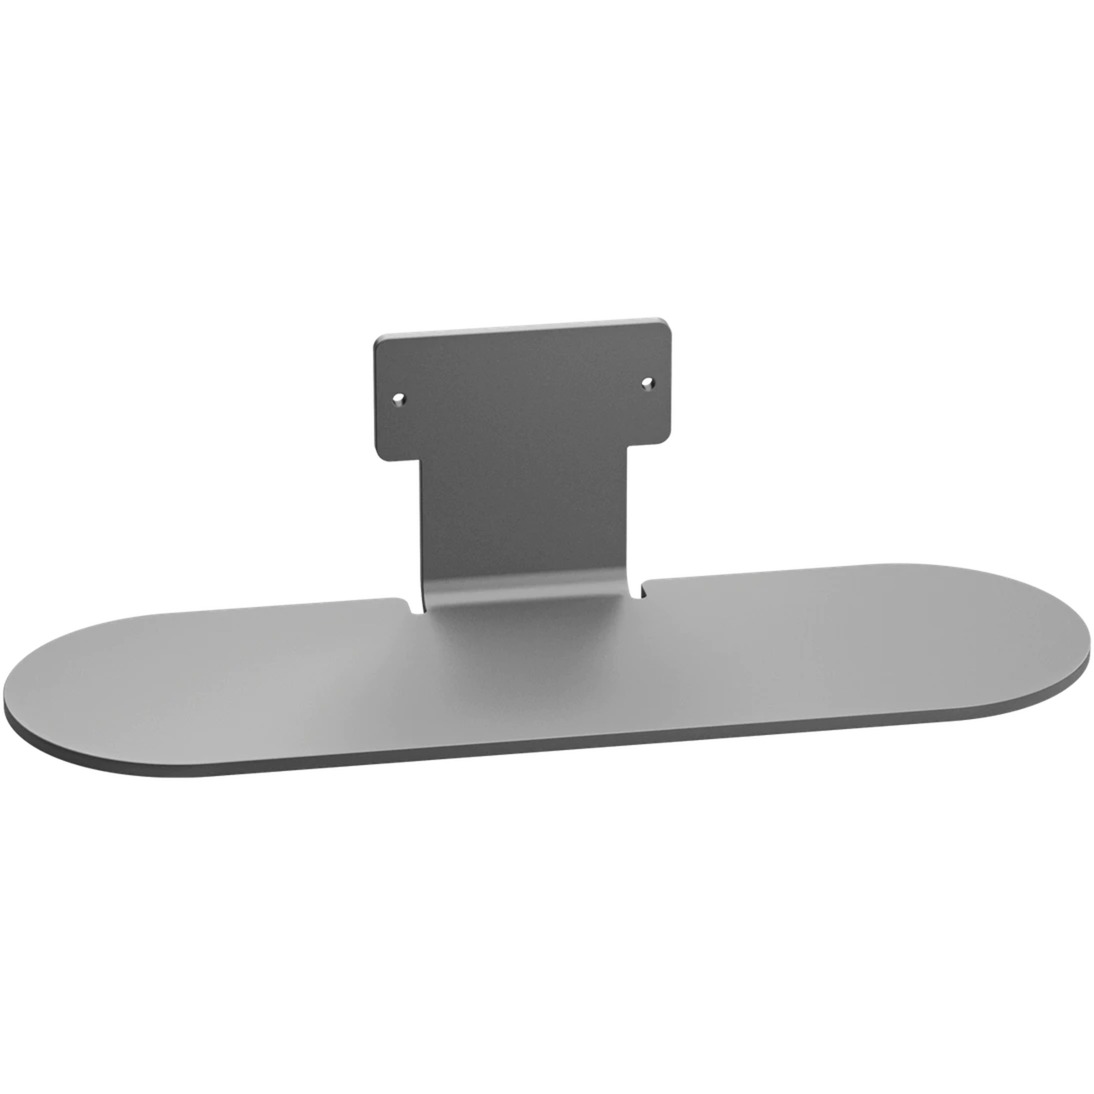 Image of Alternate - PanaCast 50 Table Stand, Halterung online einkaufen bei Alternate